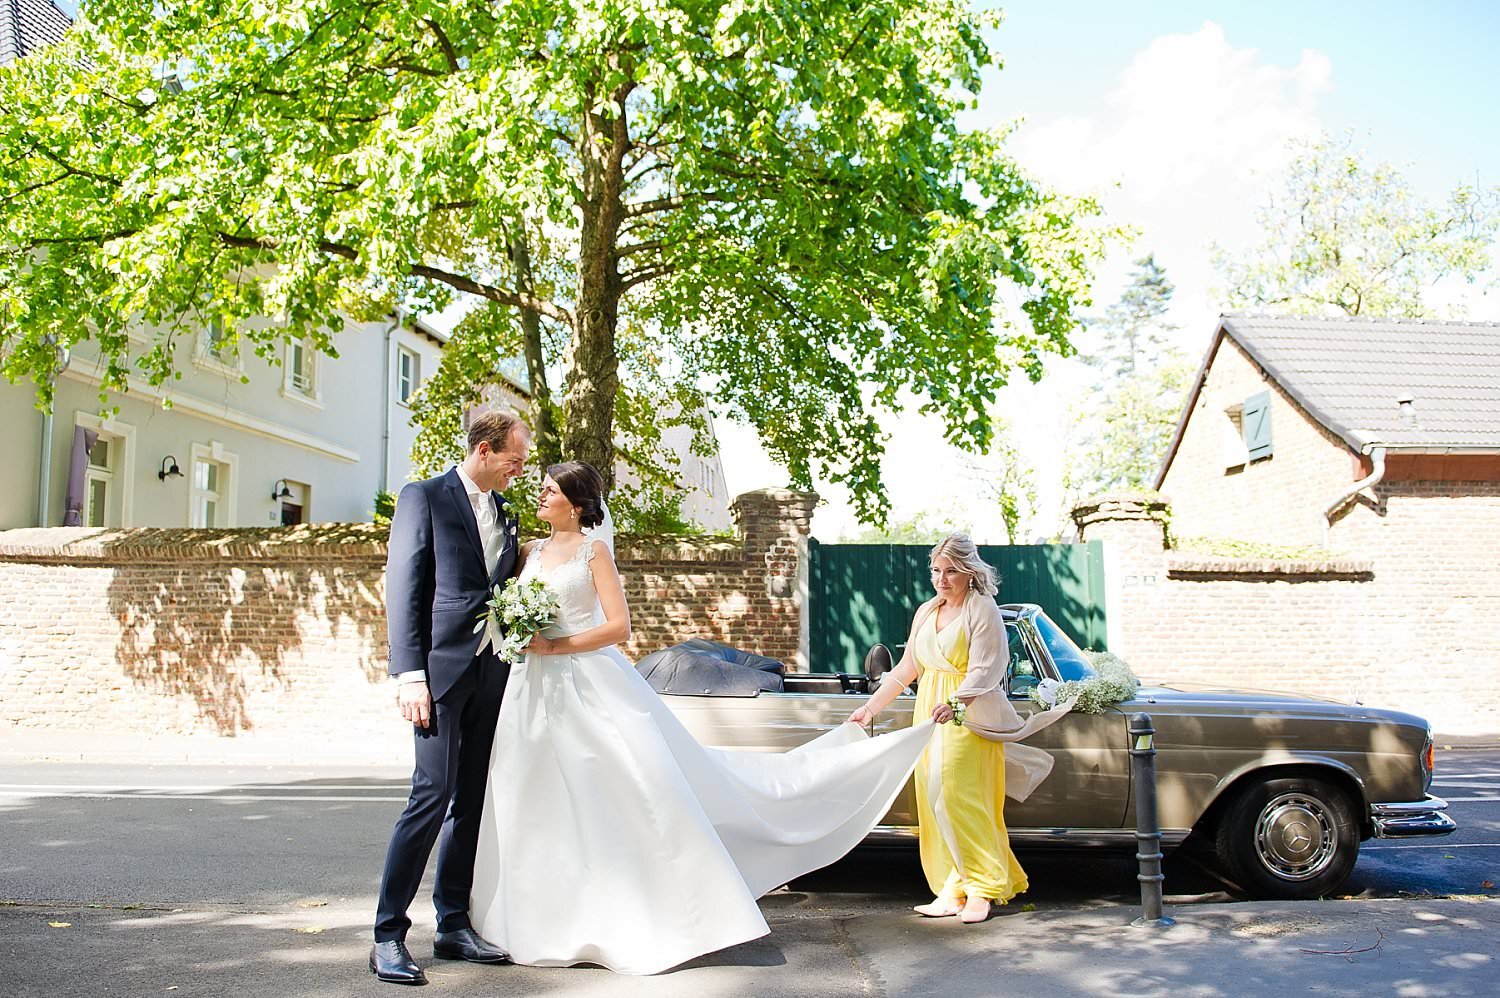 Braut und Bräutigam Hochzeitsfoto mit Hochzeitsauto im Grünen